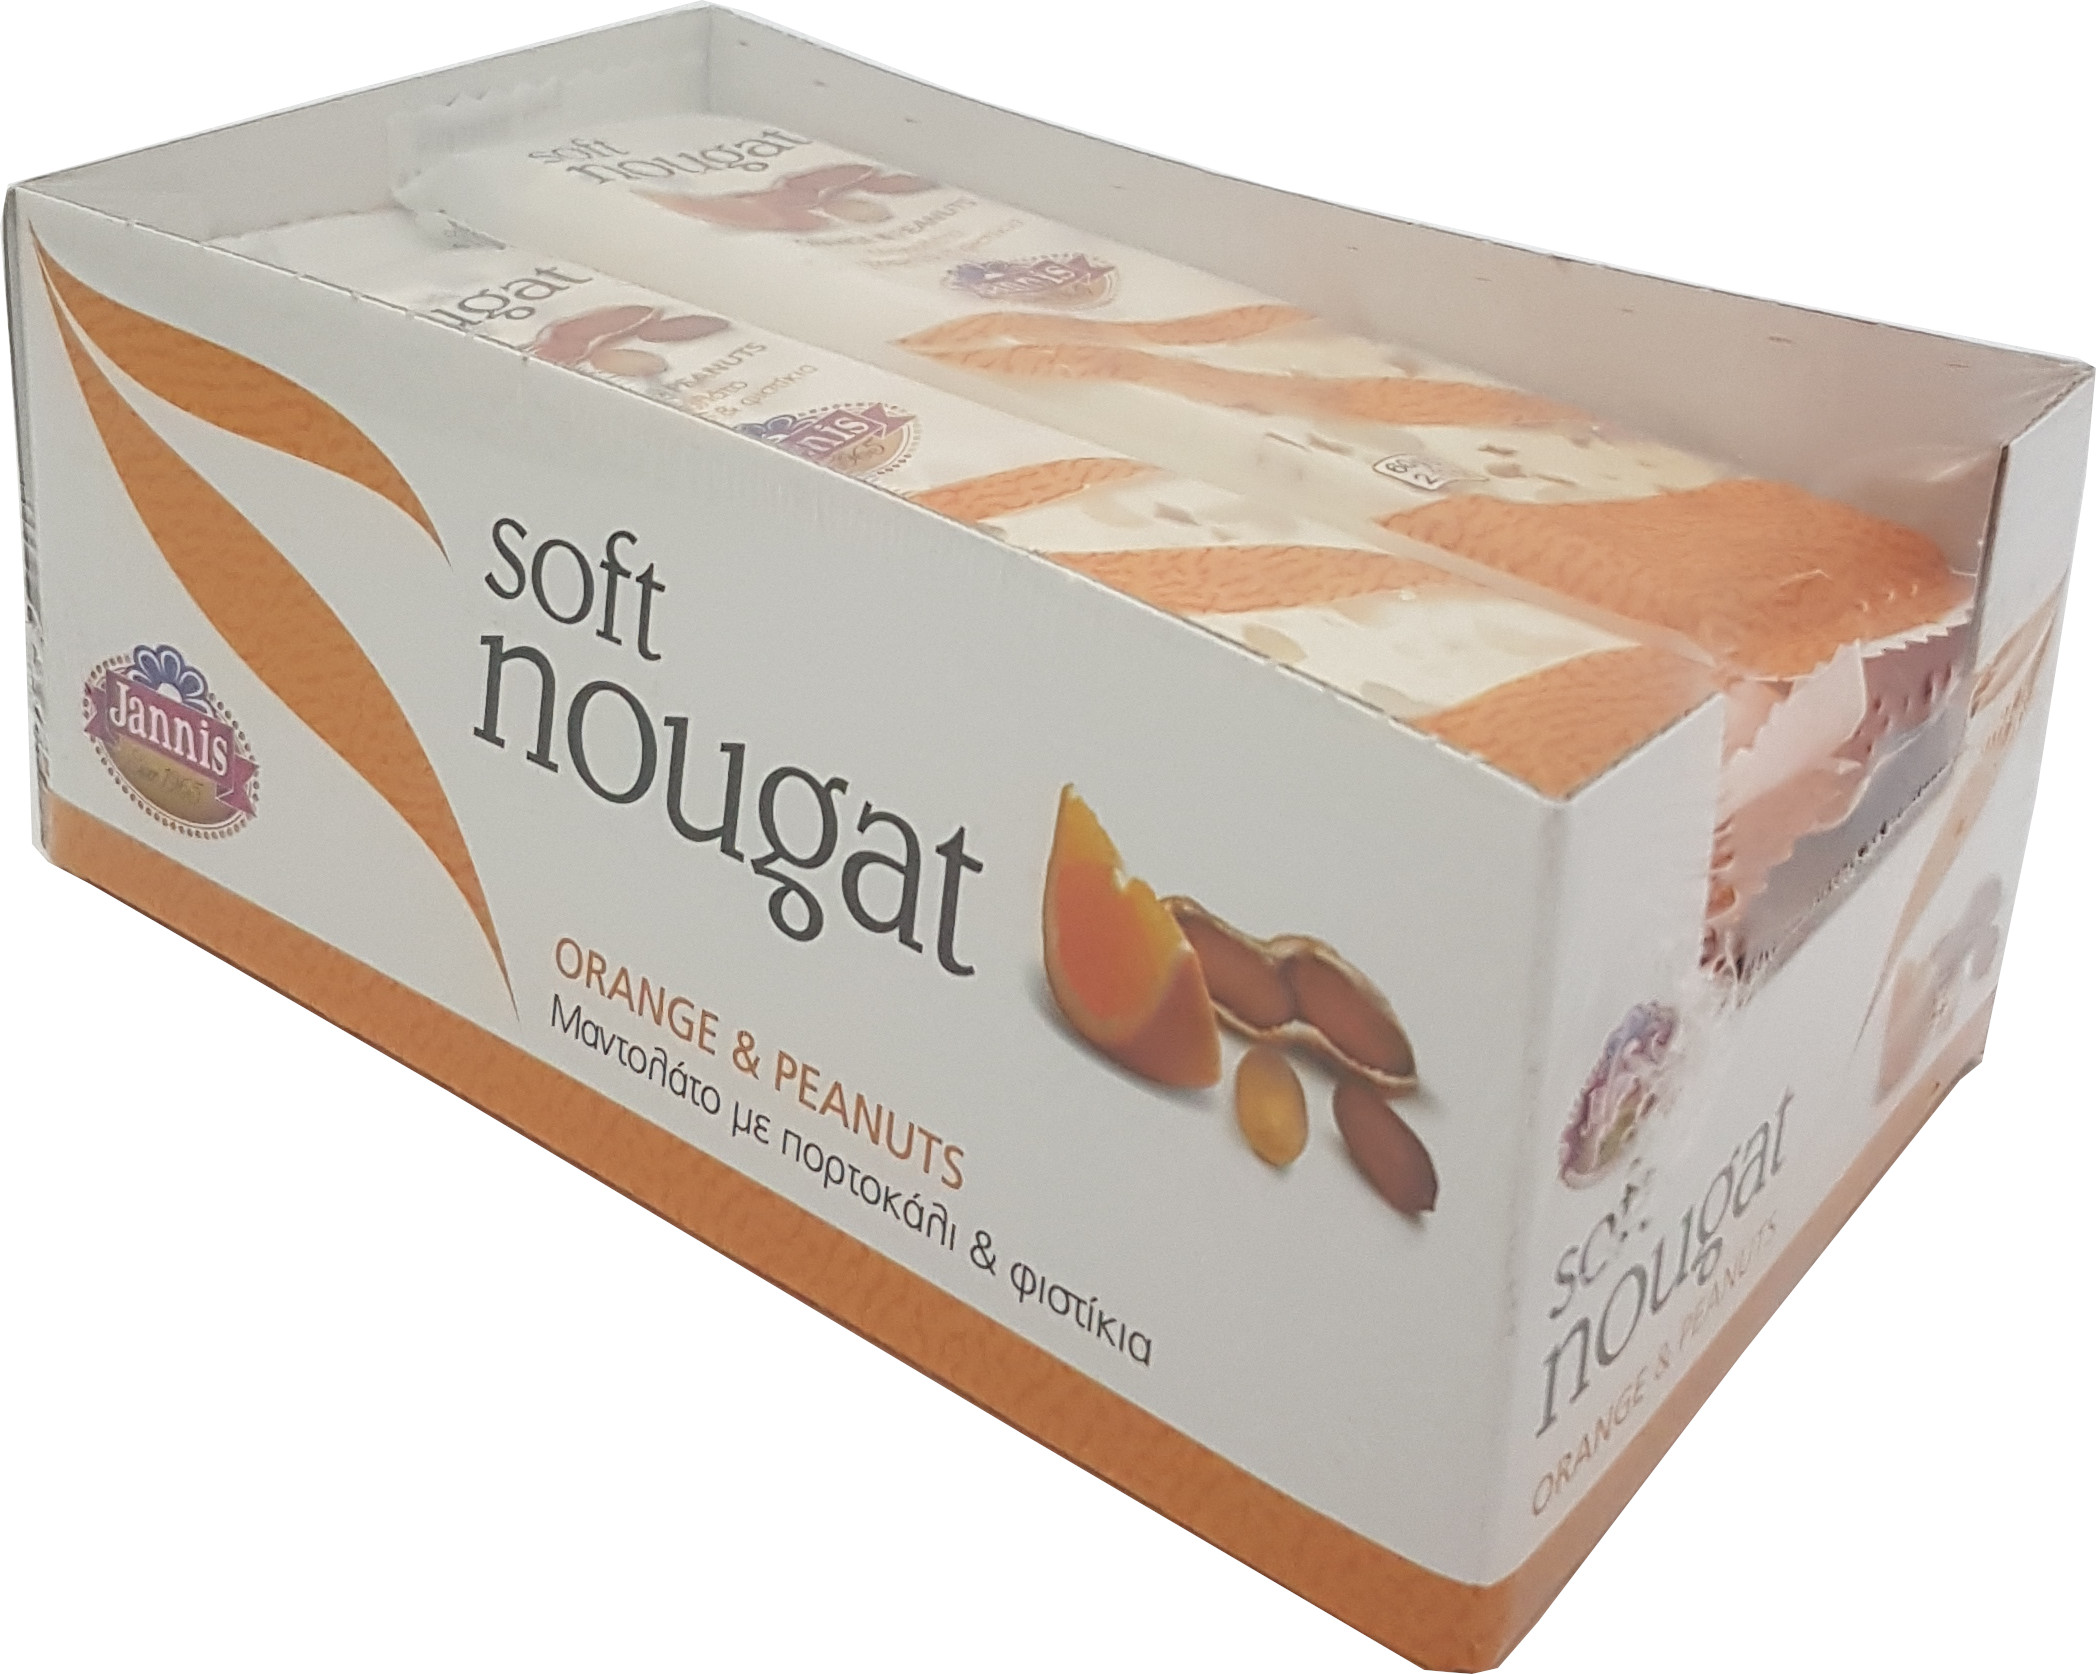 JANNIS Jemný nugát s pomerančem a arašídy 12x60 g display box